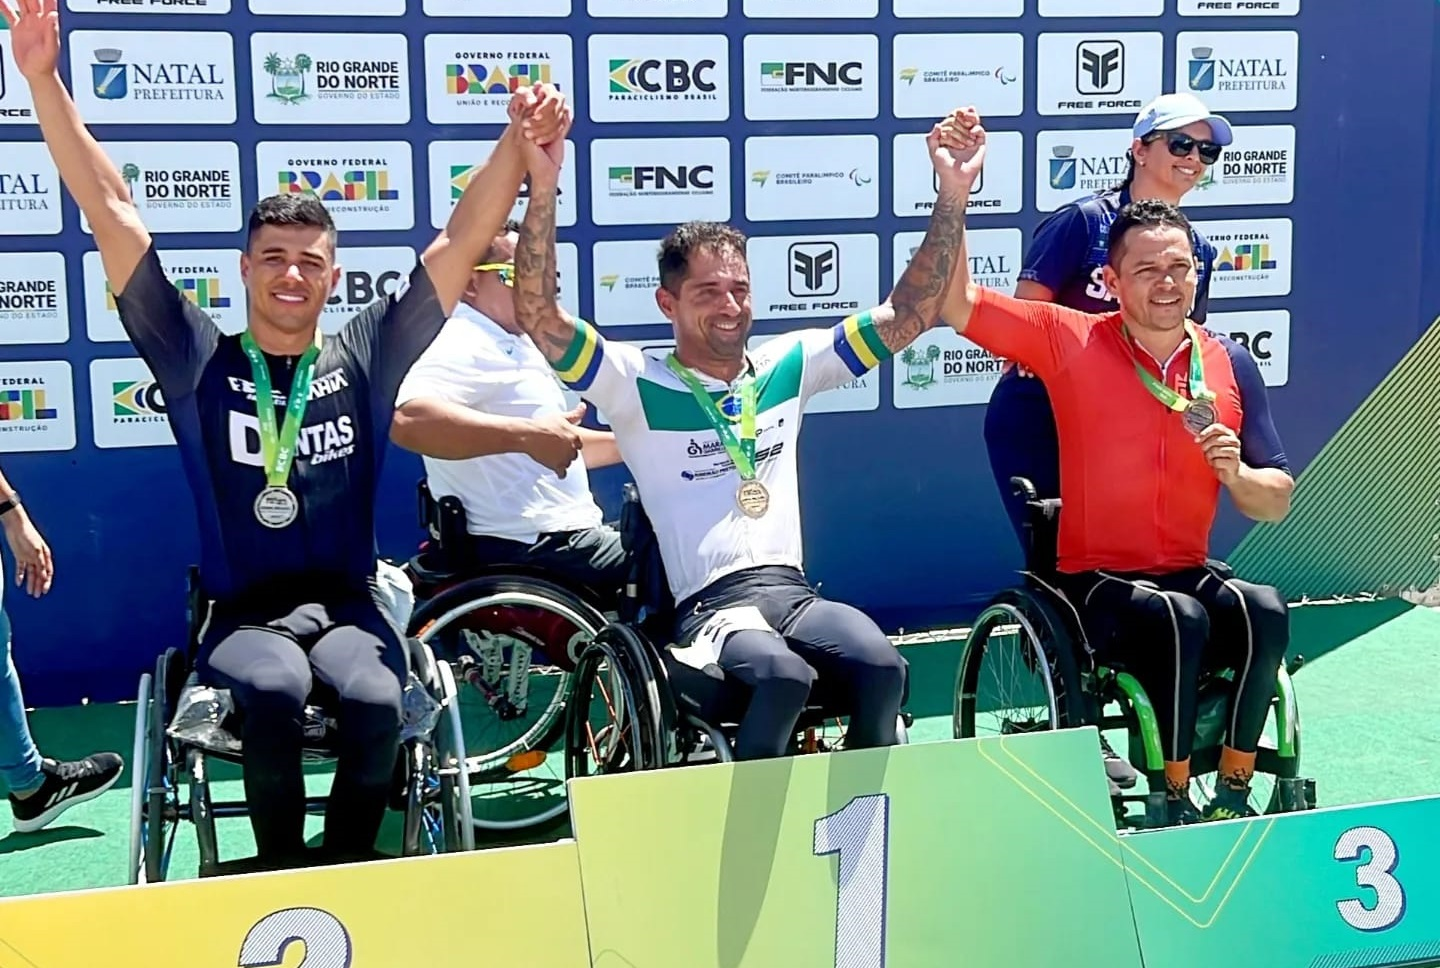 Atletas de Ribeirão Preto brilham na primeira etapa da Copa Brasil de Paraciclismo em Natal -RN